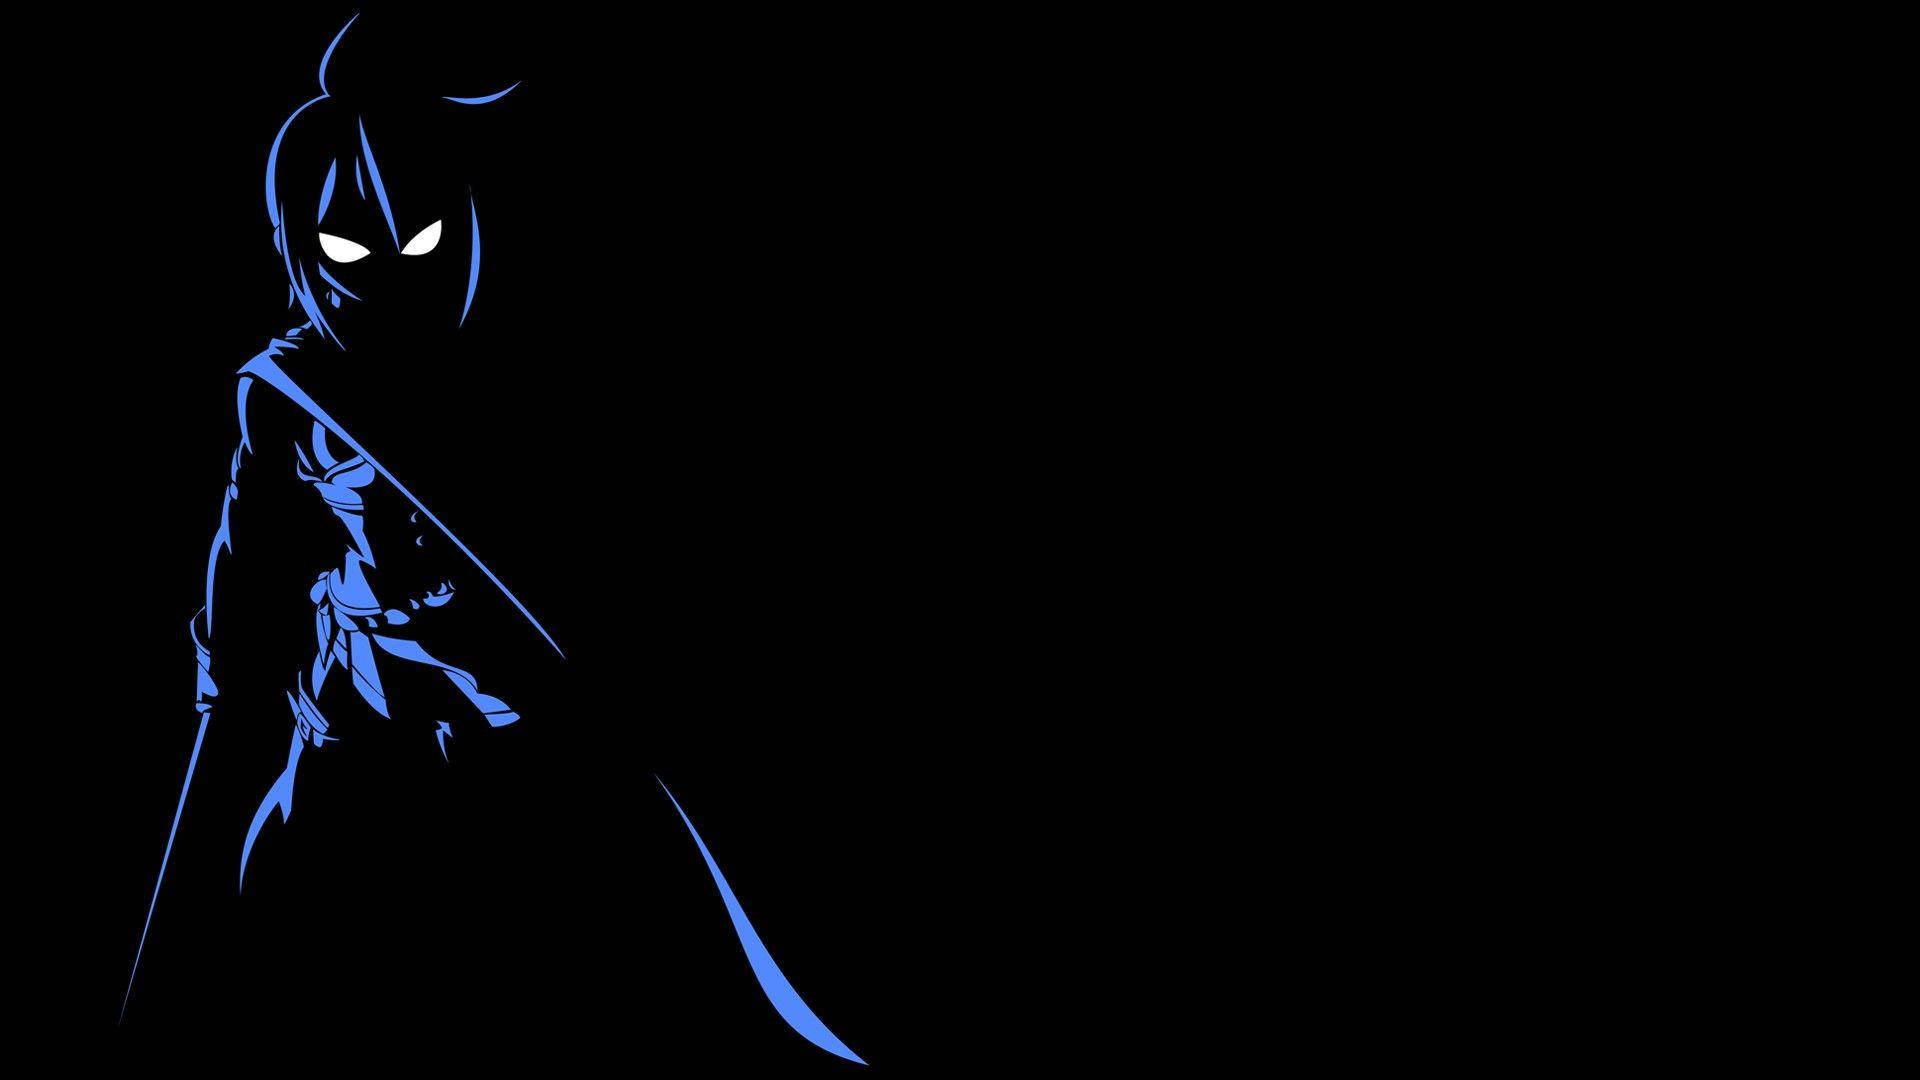 Sayaka Silhouette Dark Anime Aesthetic Desktop